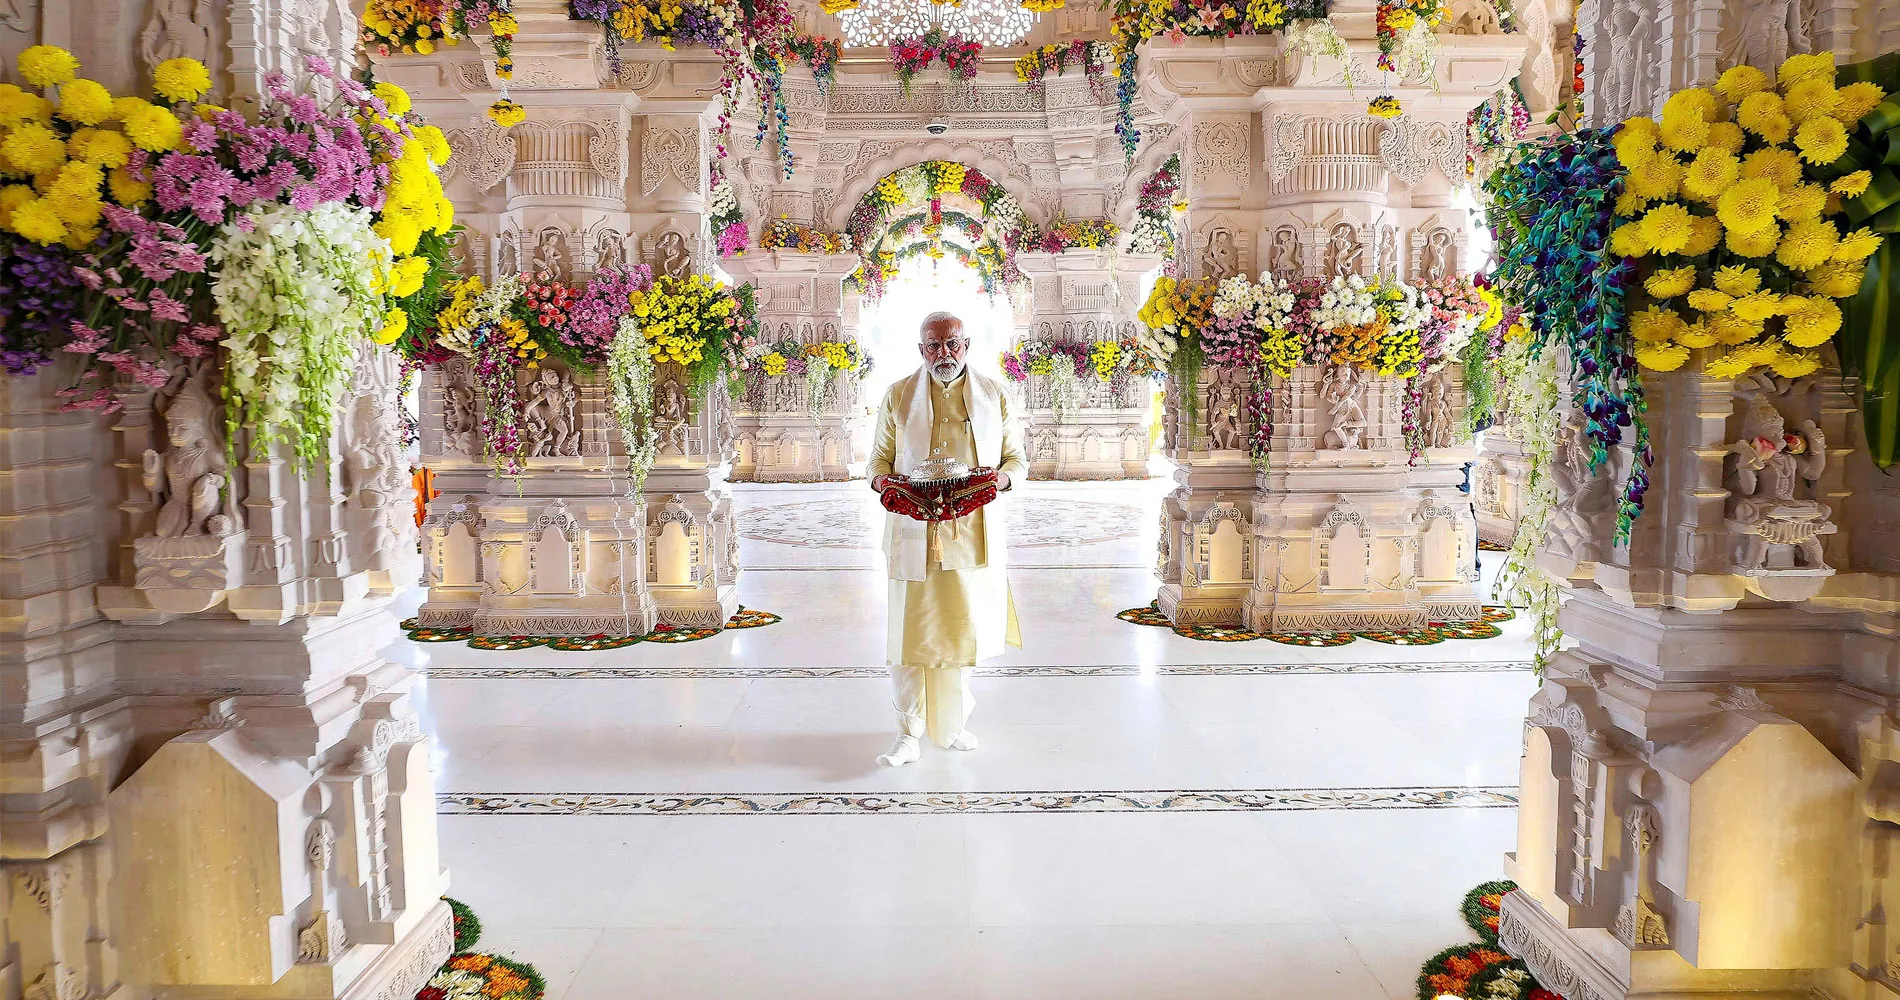 خطة إعادة انتخاب مودي: معبد رام، والقومية الهندوسية، والخطاب المعادي للمسلمين